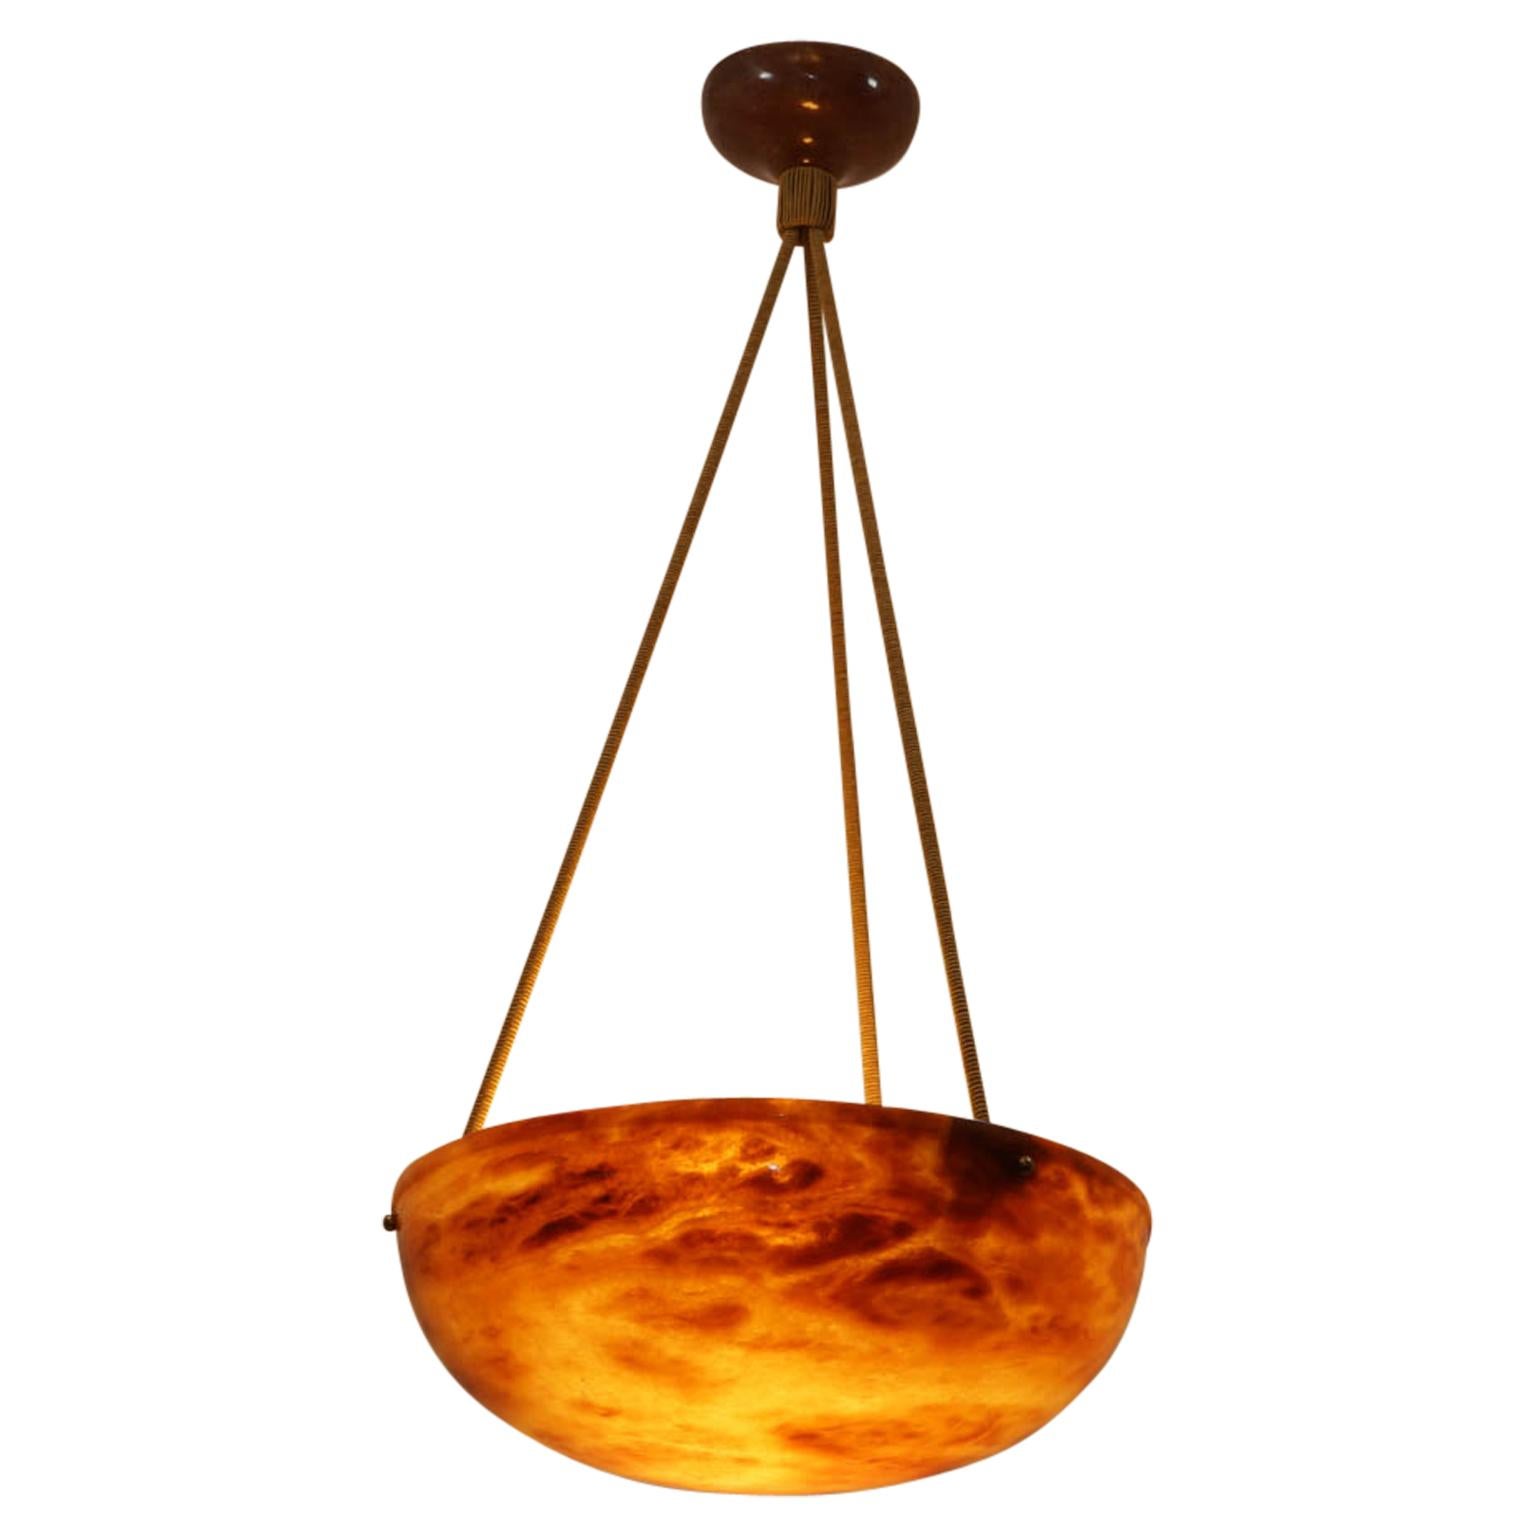 Sculpté dans un morceau d'albâtre ambré de choix, avec un simple rebord supérieur, le luminaire est suspendu à un ensemble de trois cordes en soie électrifiées, pouvant accueillir trois ampoules incandescentes de 40 watts, ou des ampoules LED de